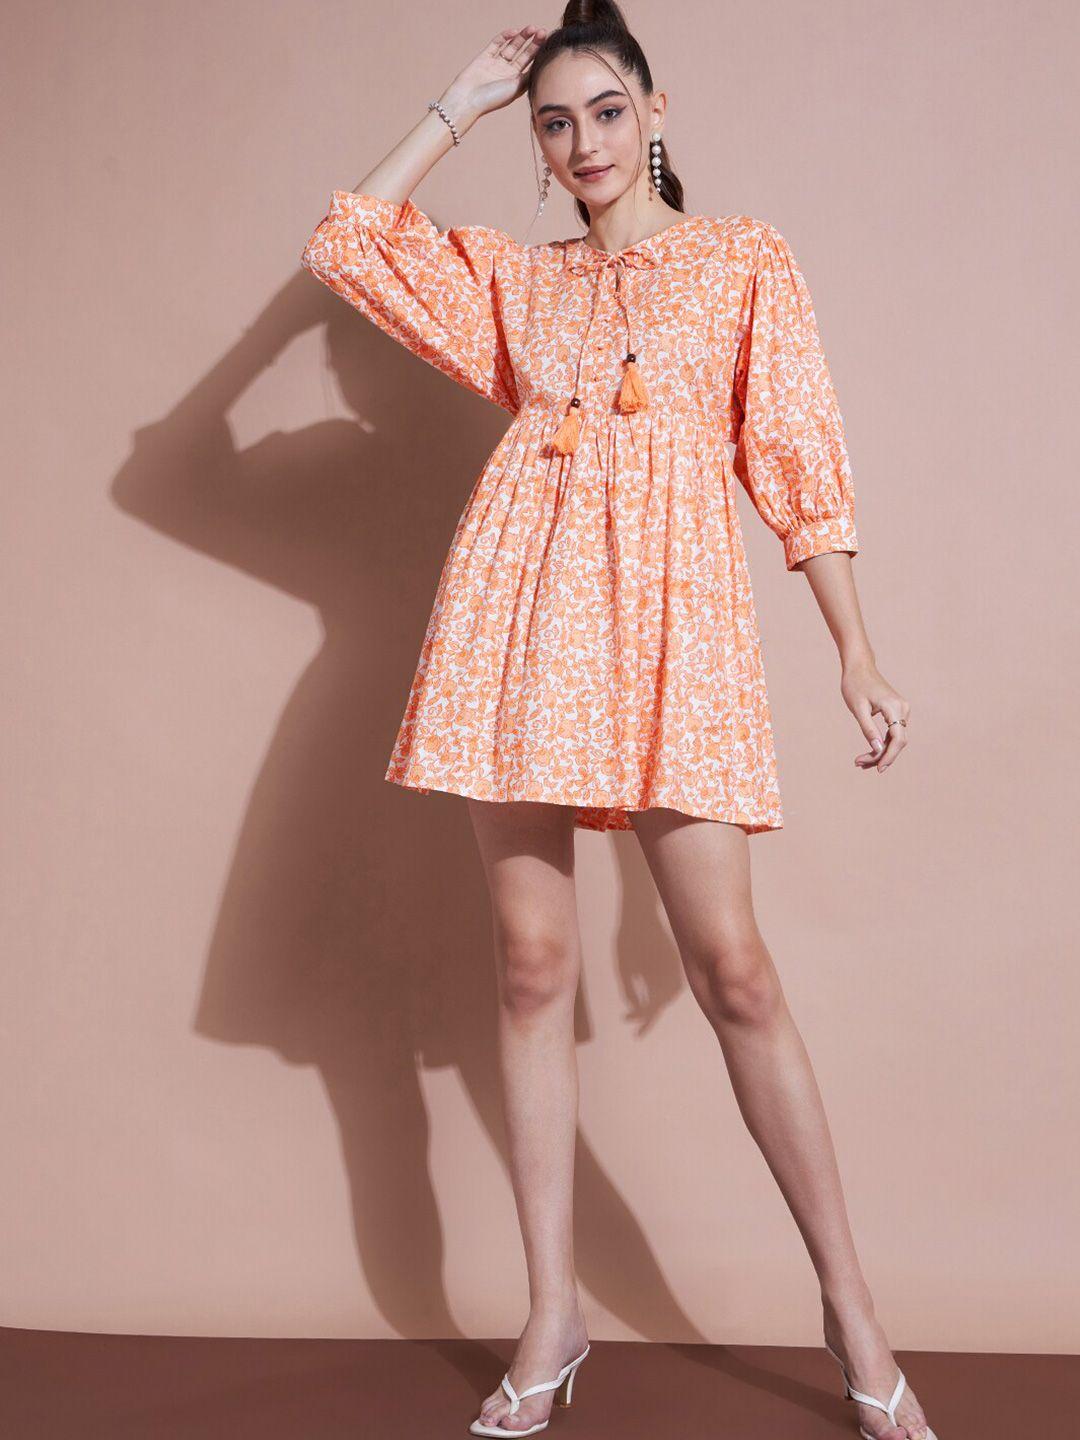 dressberry orange floral print cotton fit & flare dress